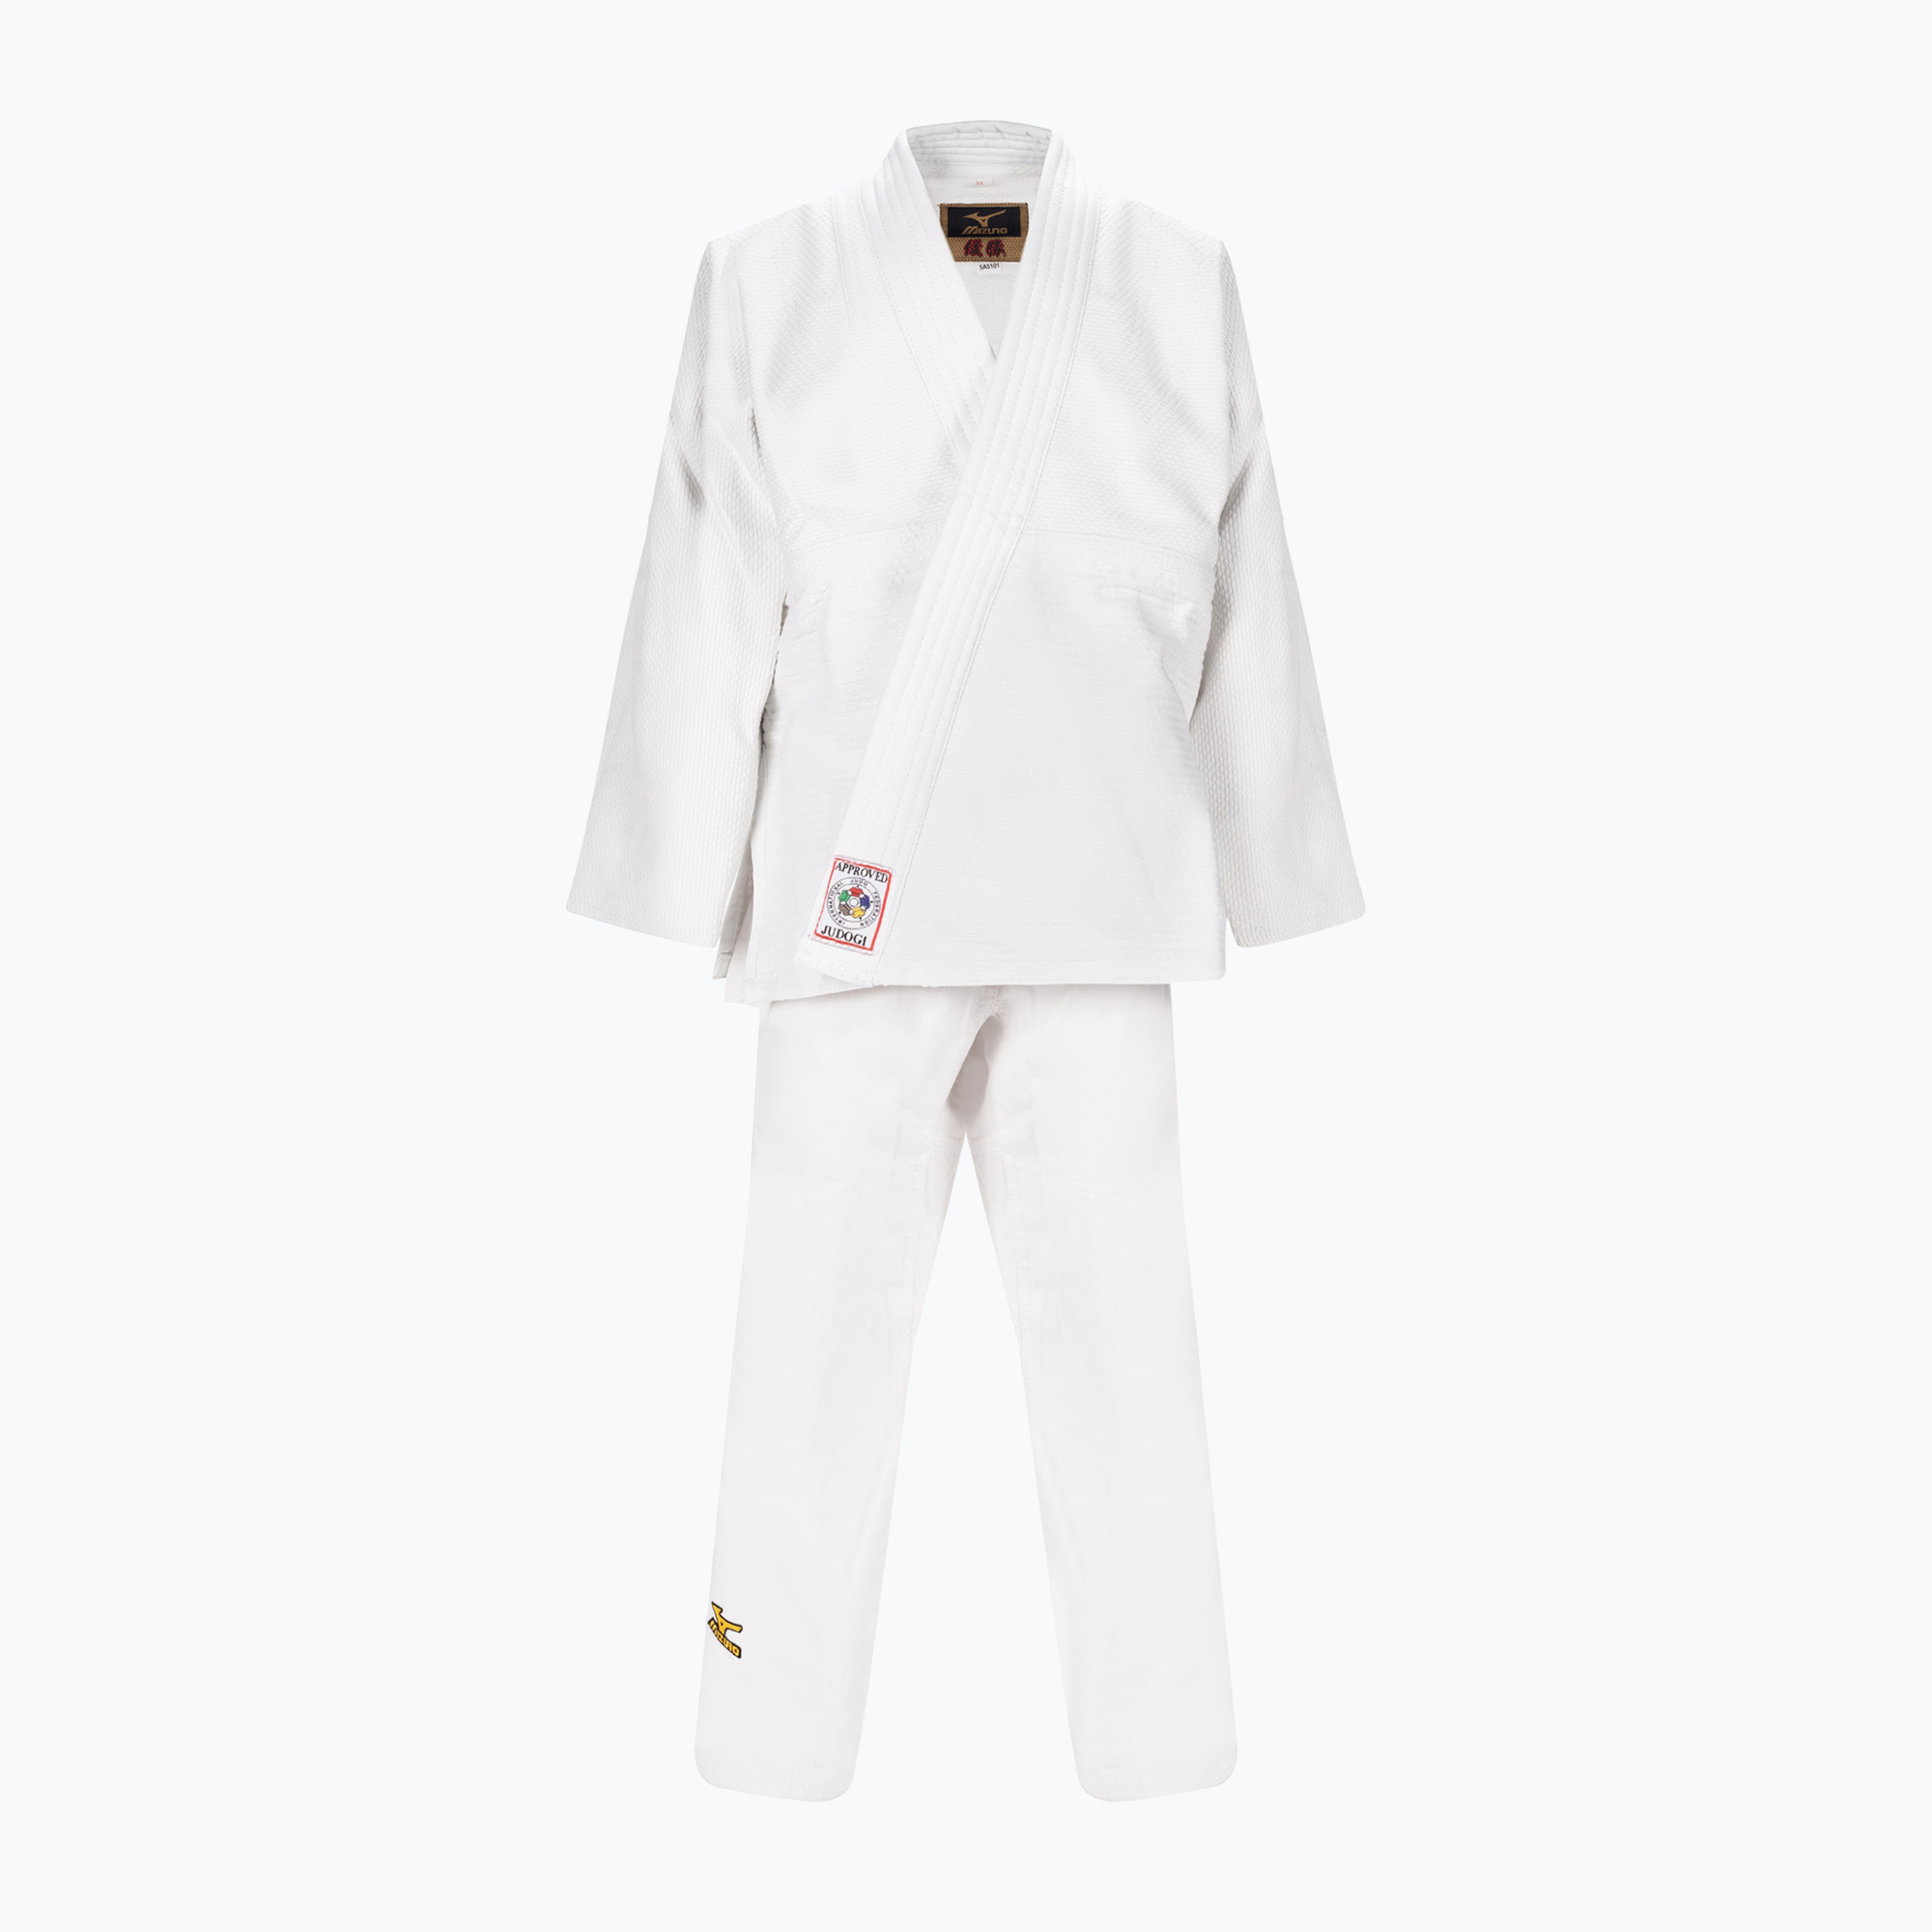 Zdjęcia - Ubrania do sportów walki Mizuno Gl do judo  Yusho białe 5A51013502 | WYSYŁKA W 24H | 30 DNI NA ZWROT 